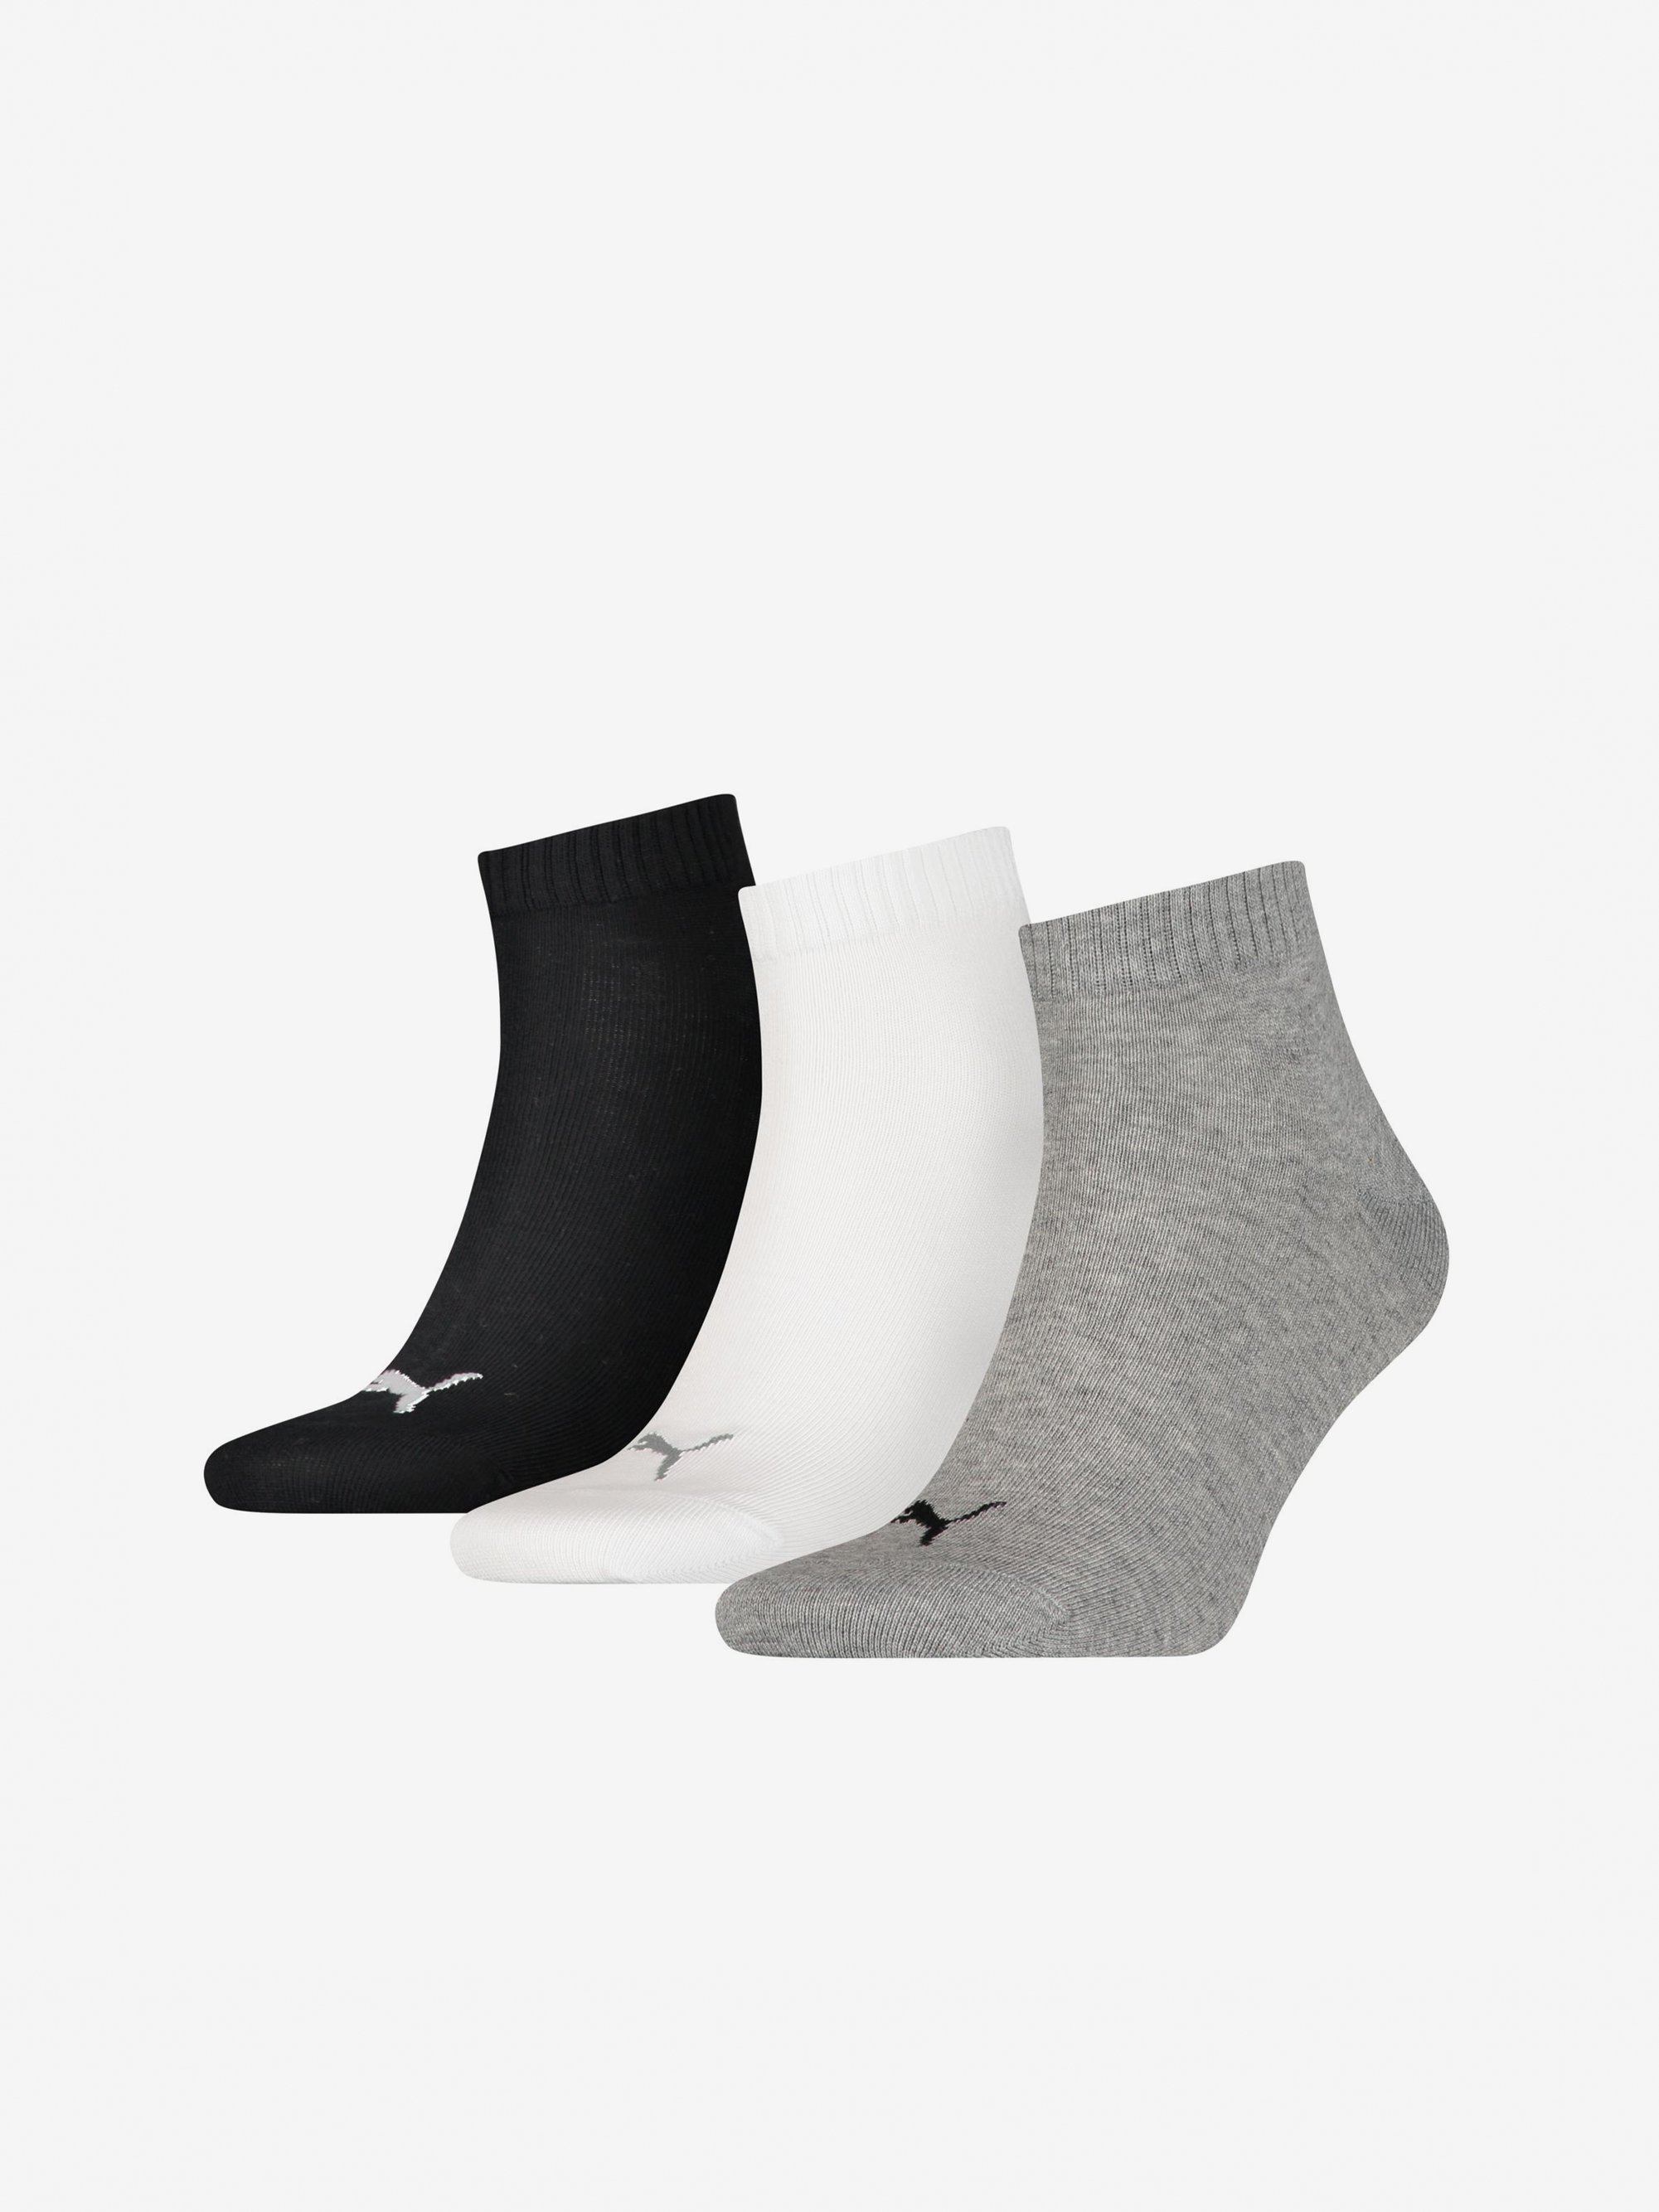 Sada tří párů ponožek v šedé, bílé a černé barvě Puma